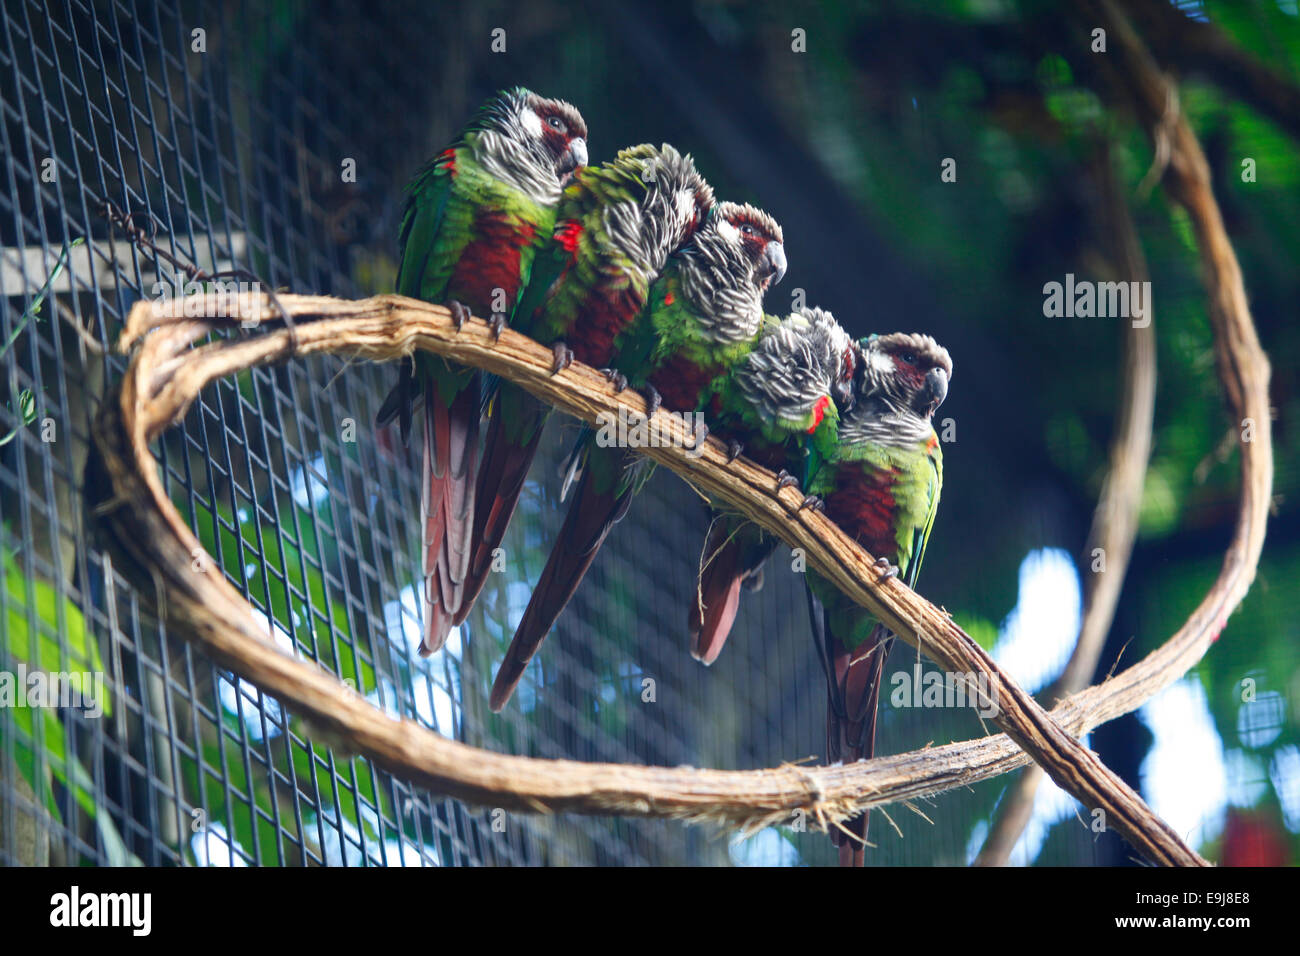 Les oiseaux exotiques aux couleurs vives. Parque das Aves (Parc des Oiseaux), Foz do Iguaçu, Brésil. Banque D'Images